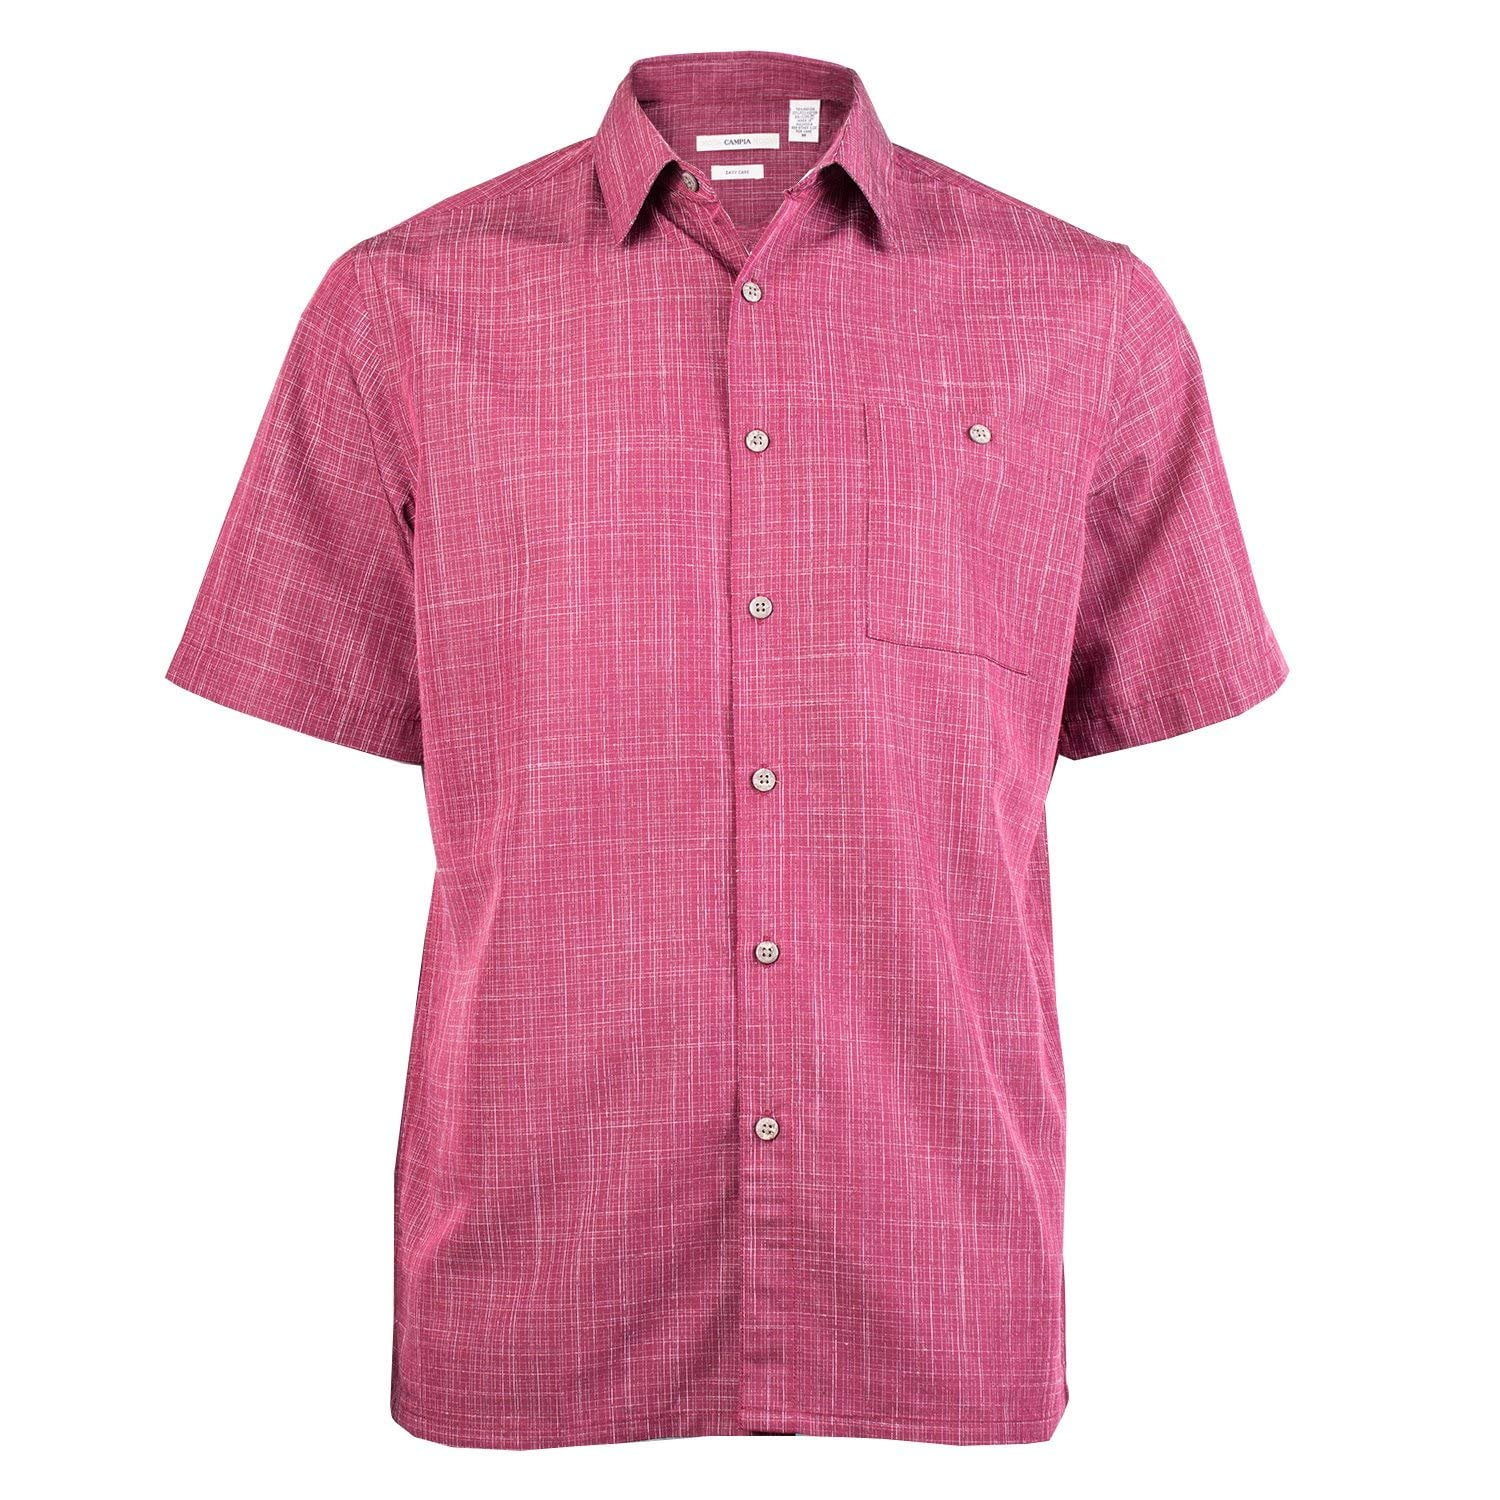 Campia Moda - Campia Men's Textured Solid Shirt (Burgundy, L) - Walmart ...